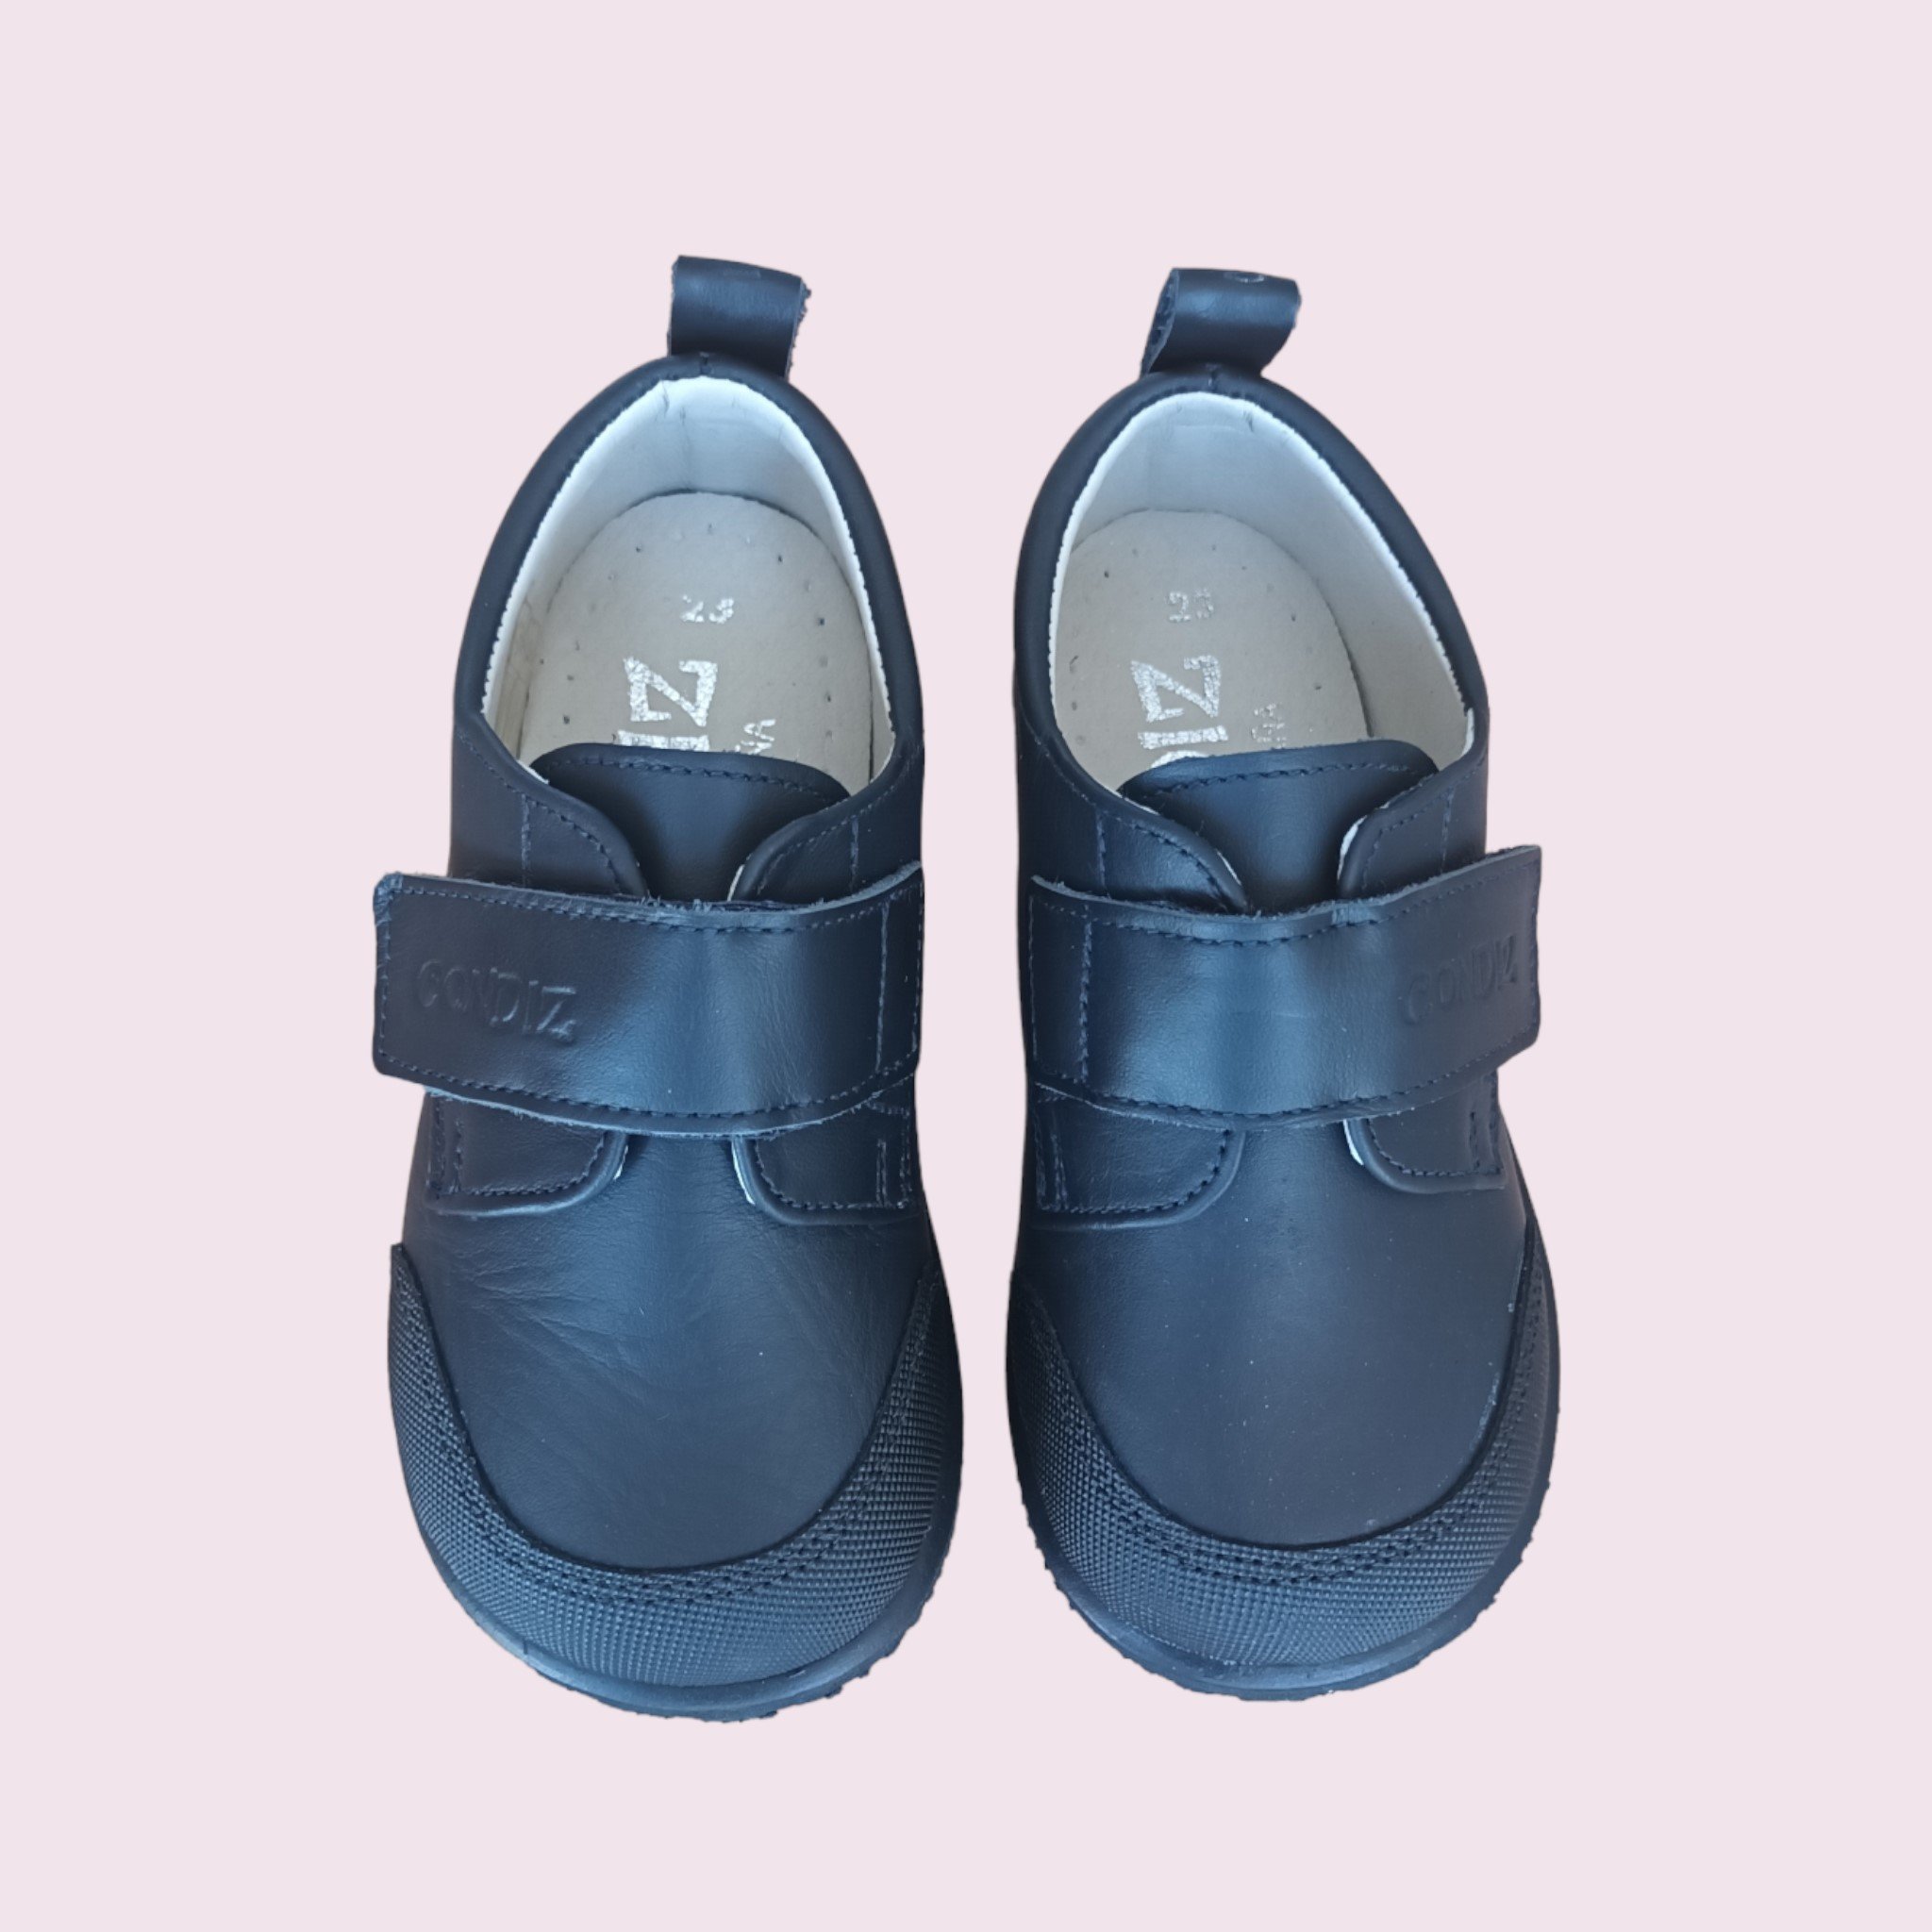 Comprar Online Calzado respetuoso baratos y de calidad de la marca CONDIZ, Zapatos low cost